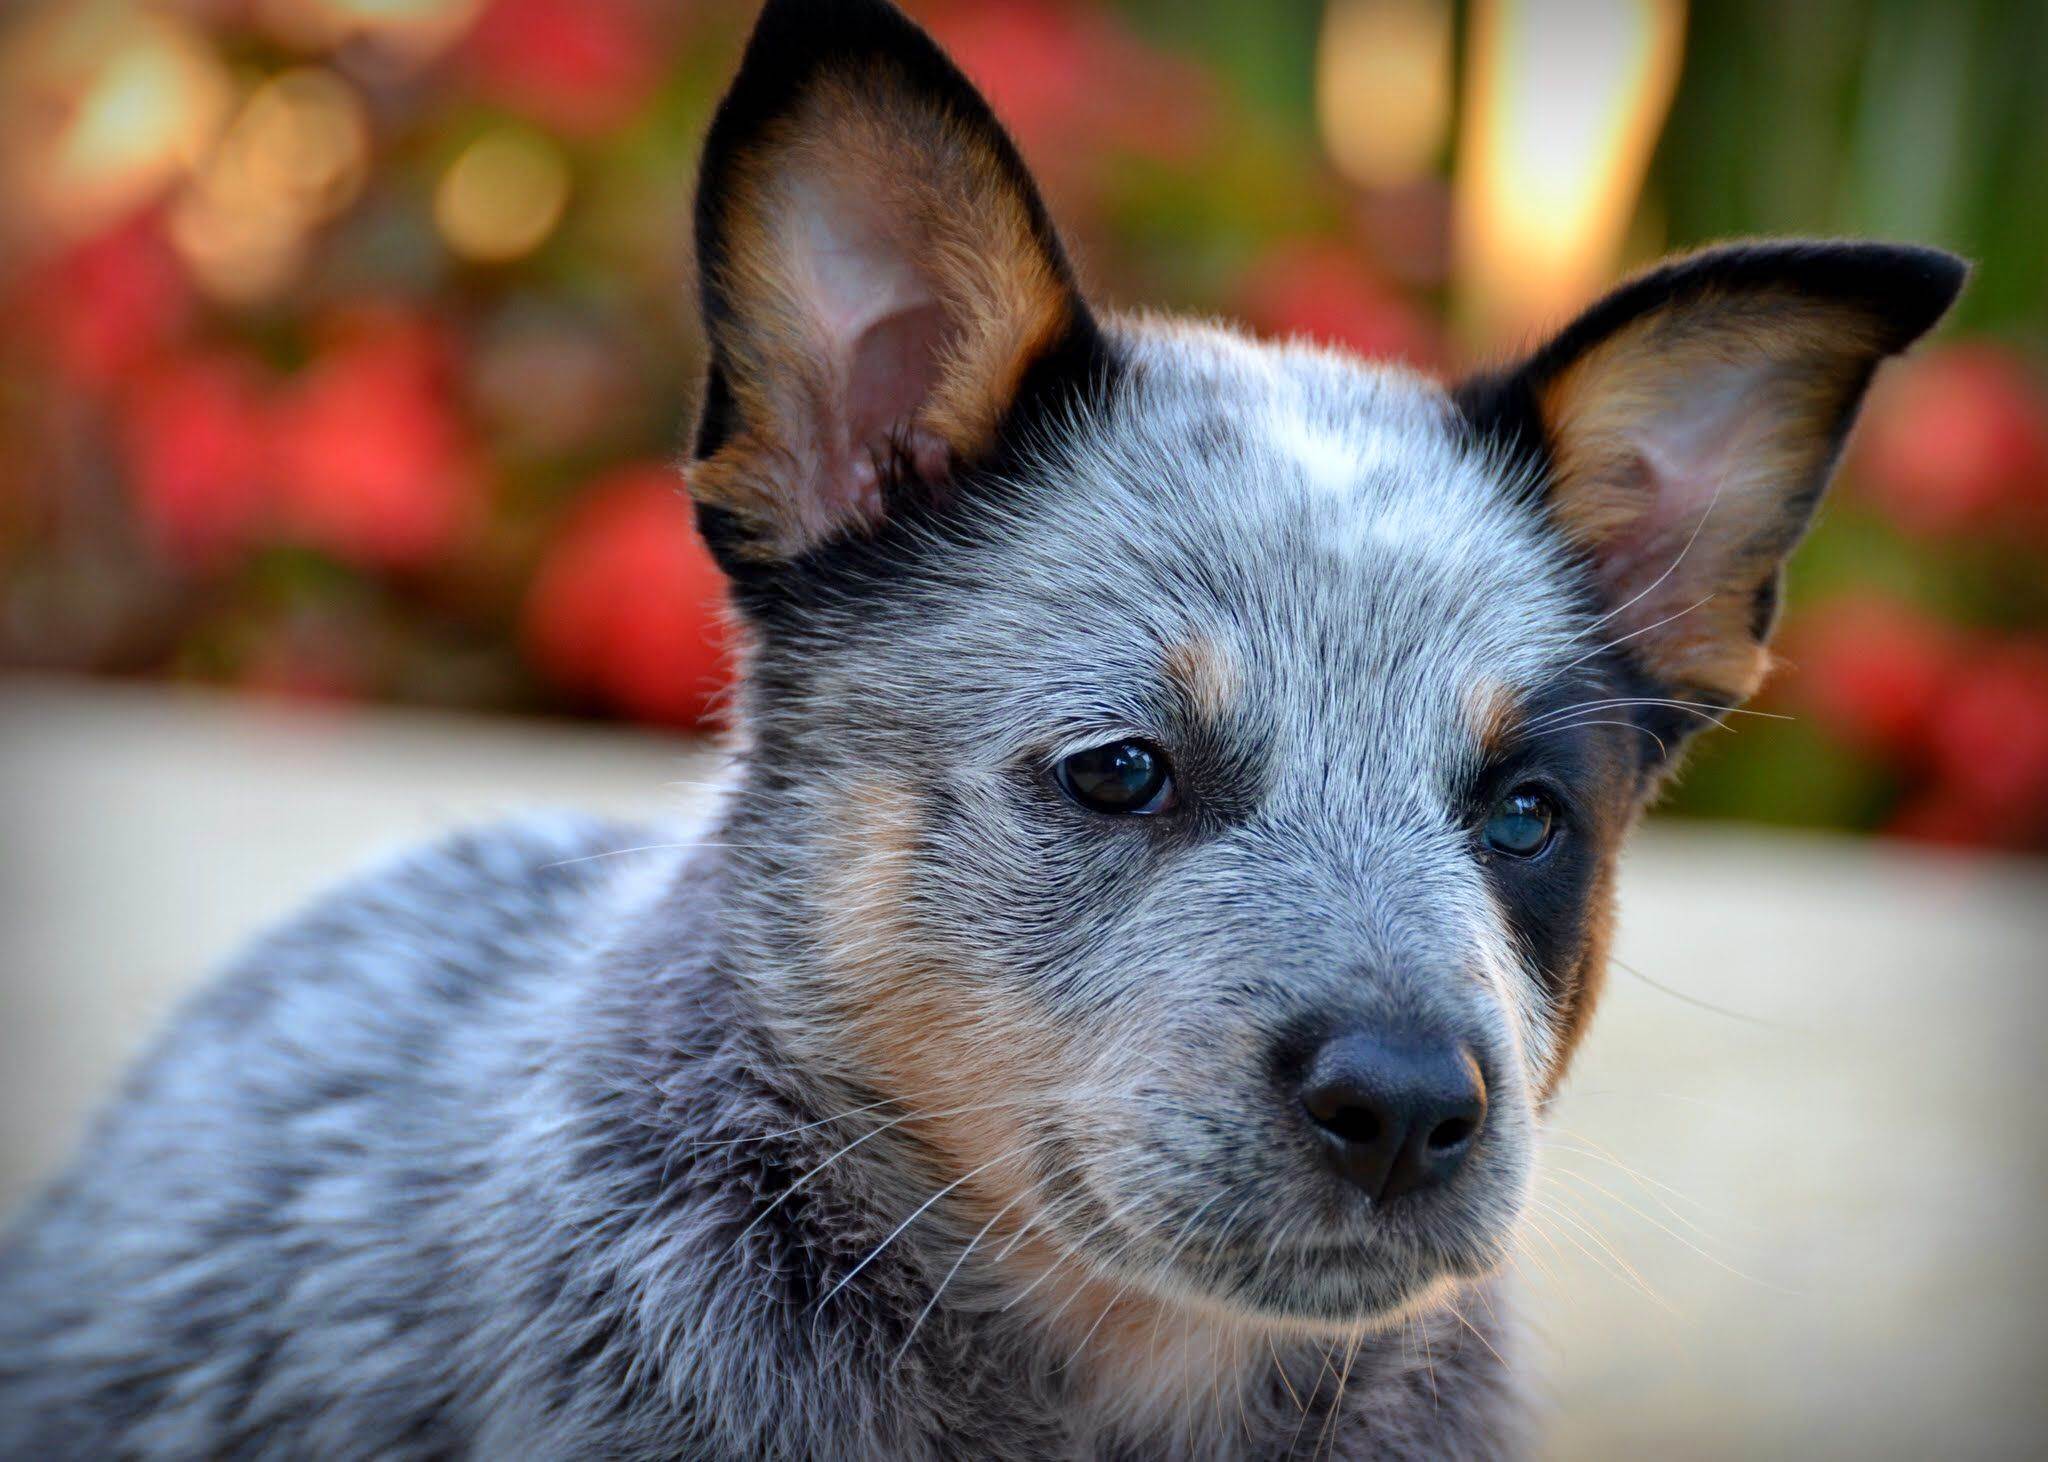 Австралийская пастушья собака хилер (кеттл дог): описание и характеристики породы, фото, содержание и уход за щенками